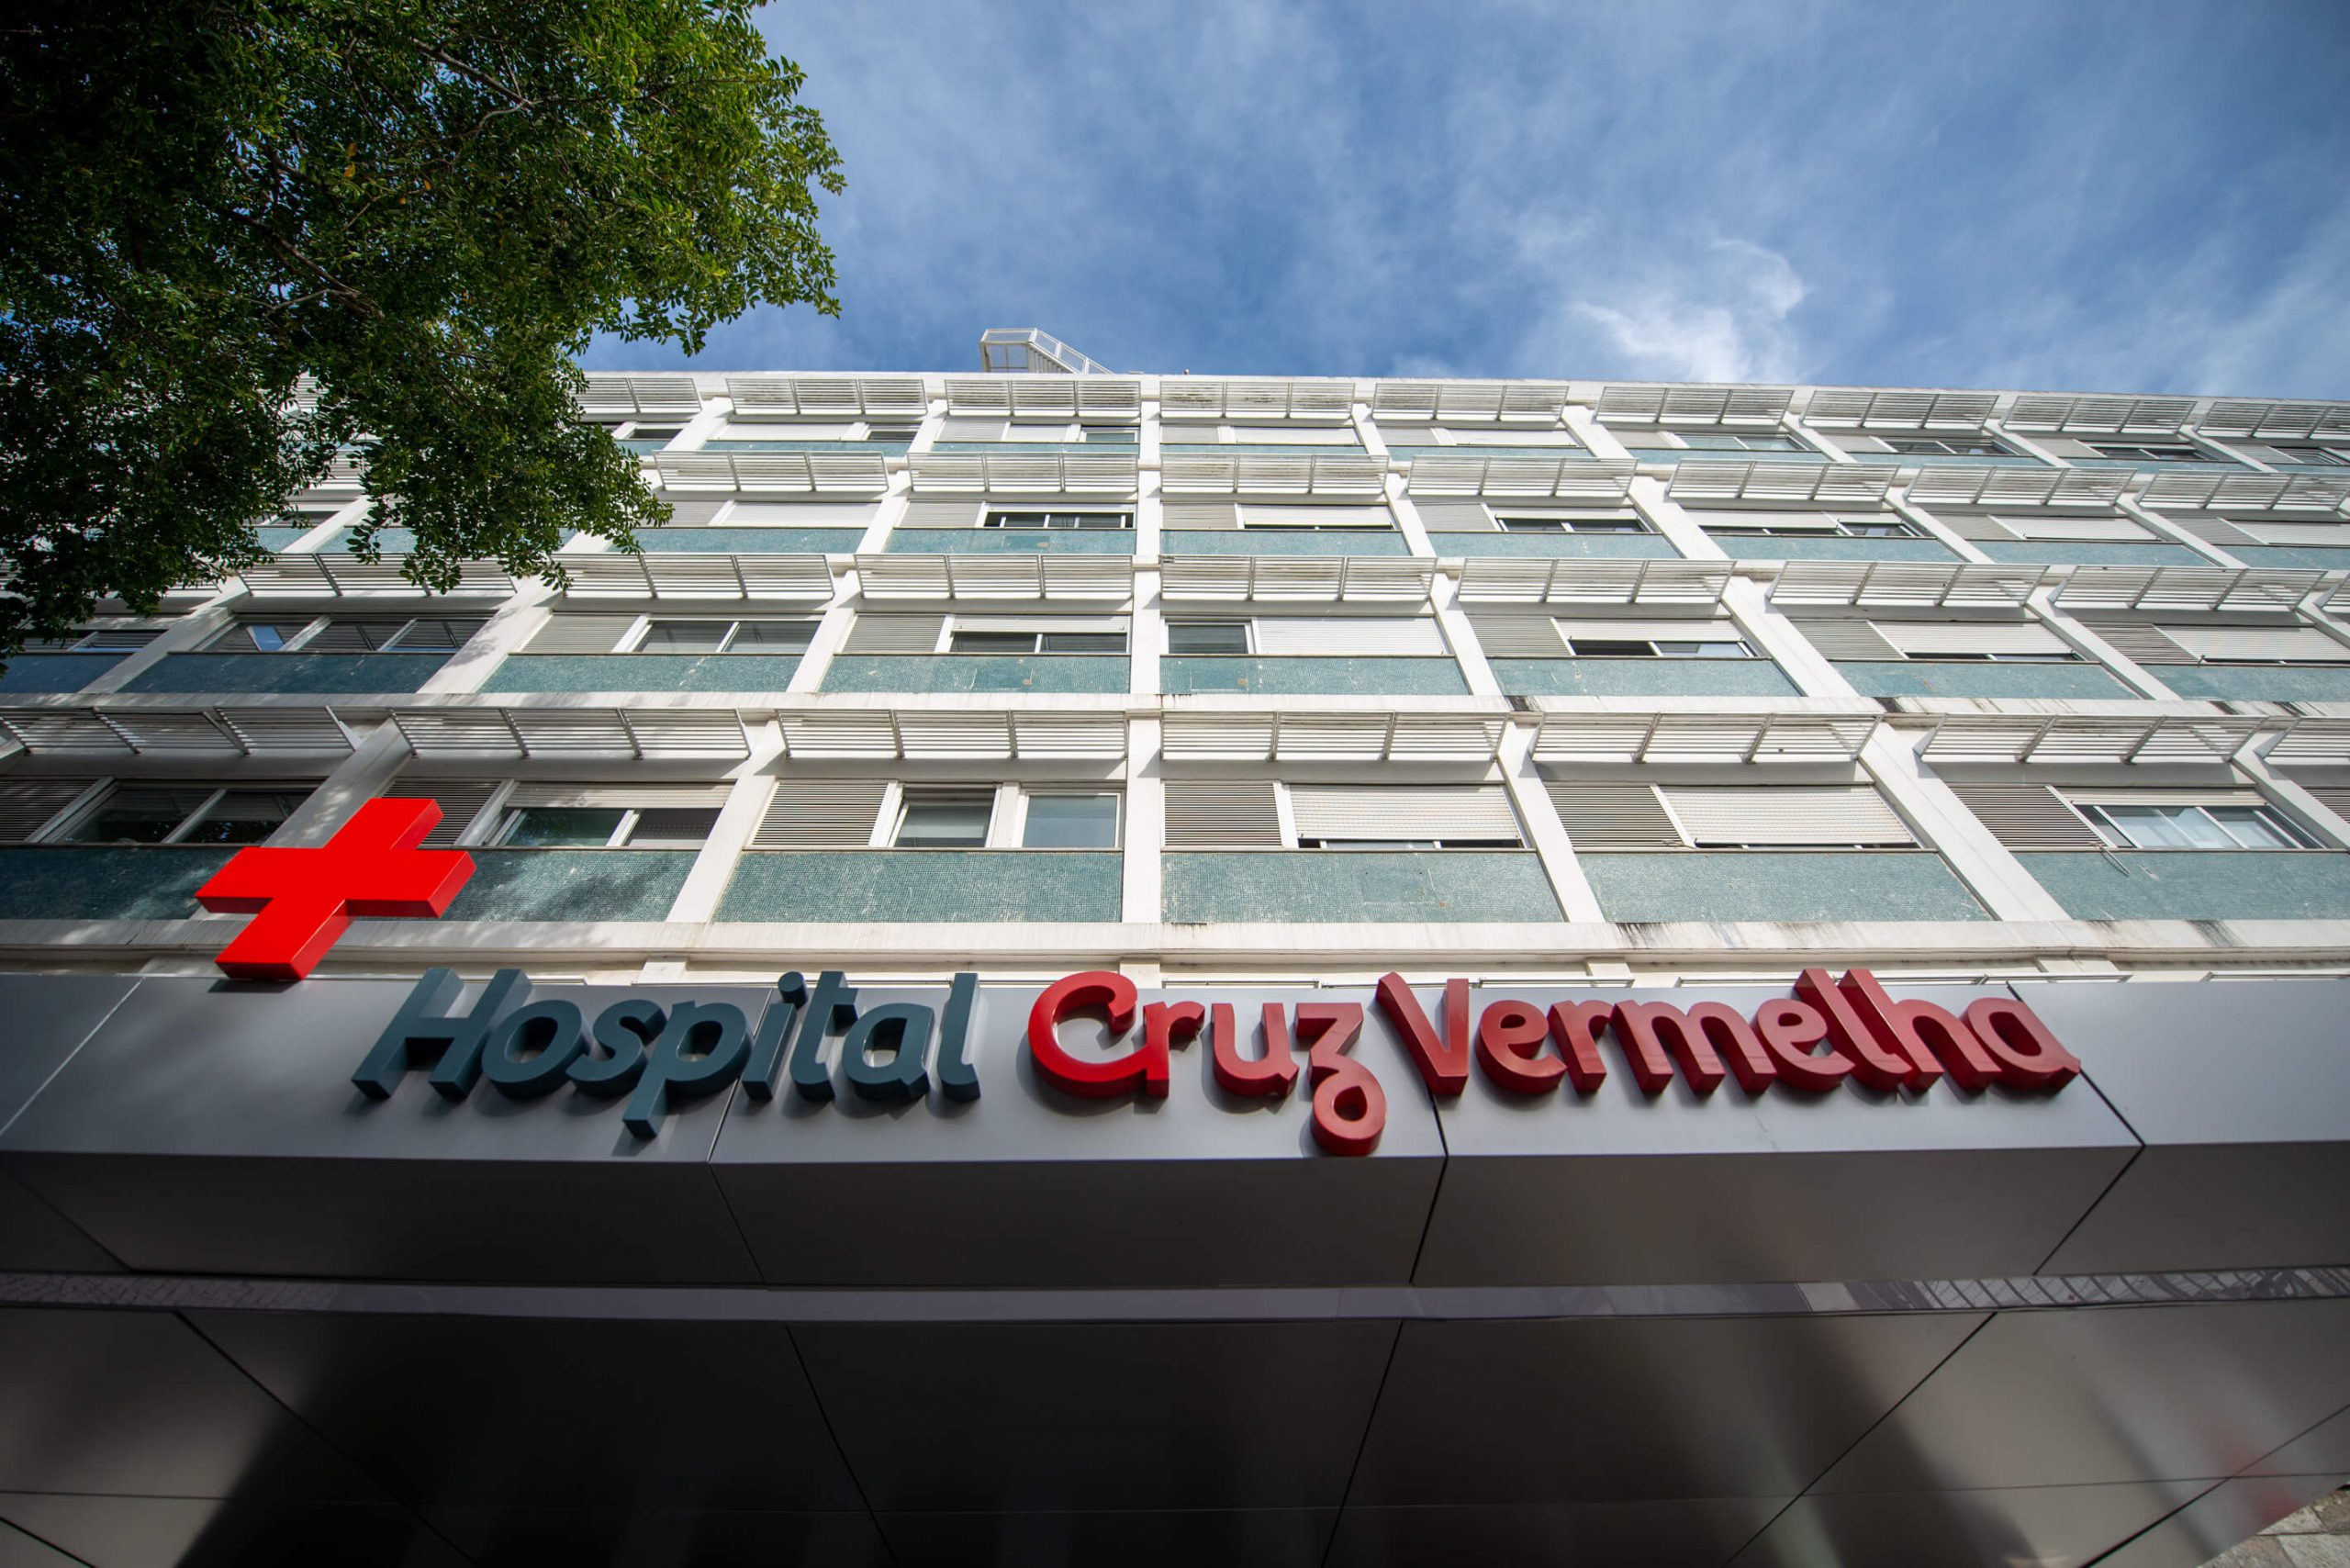 Santa Casa adquire capital da Cruz Vermelha Portuguesa na Sociedade Gestora do Hospital da Cruz Vermelha